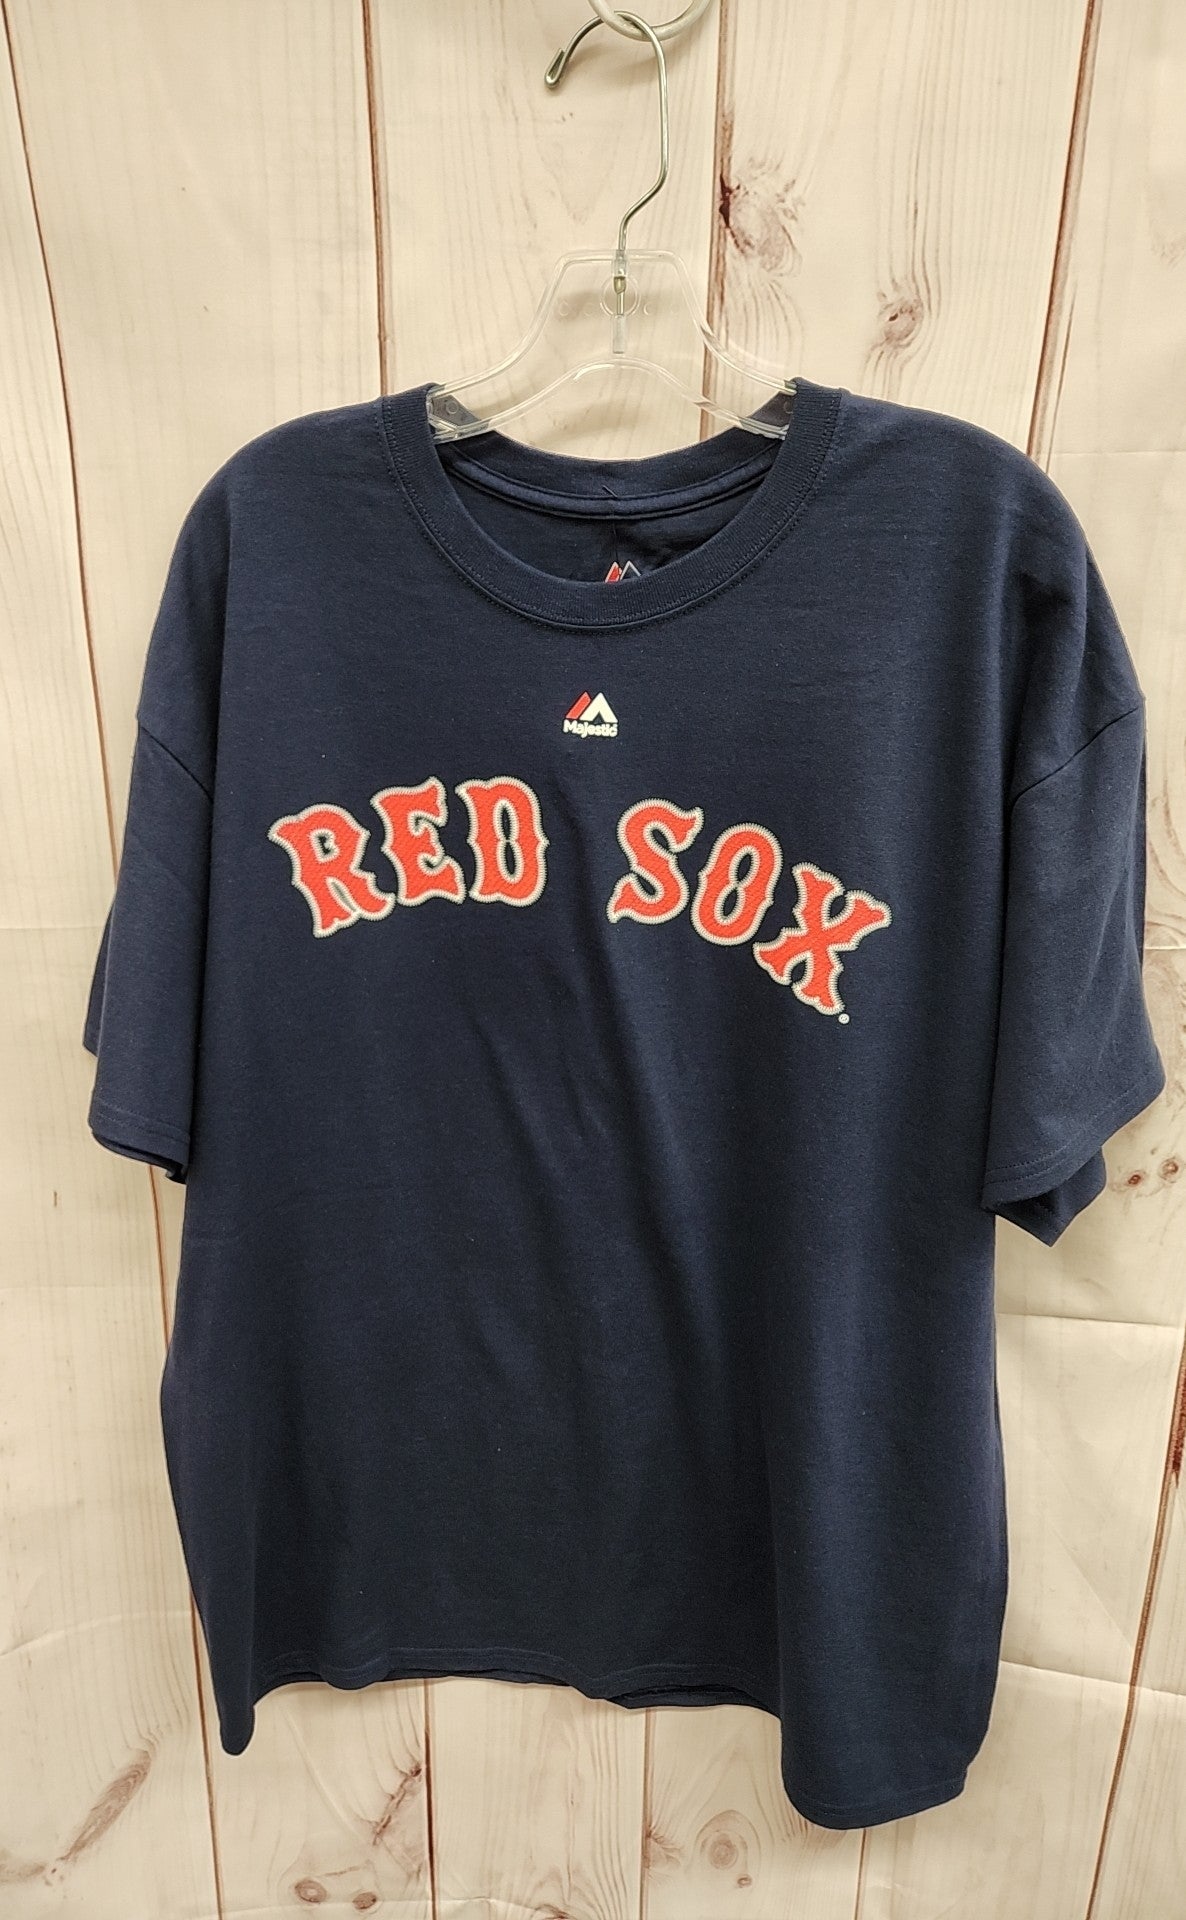 Red Sox Men's Size XL Navy Shirt